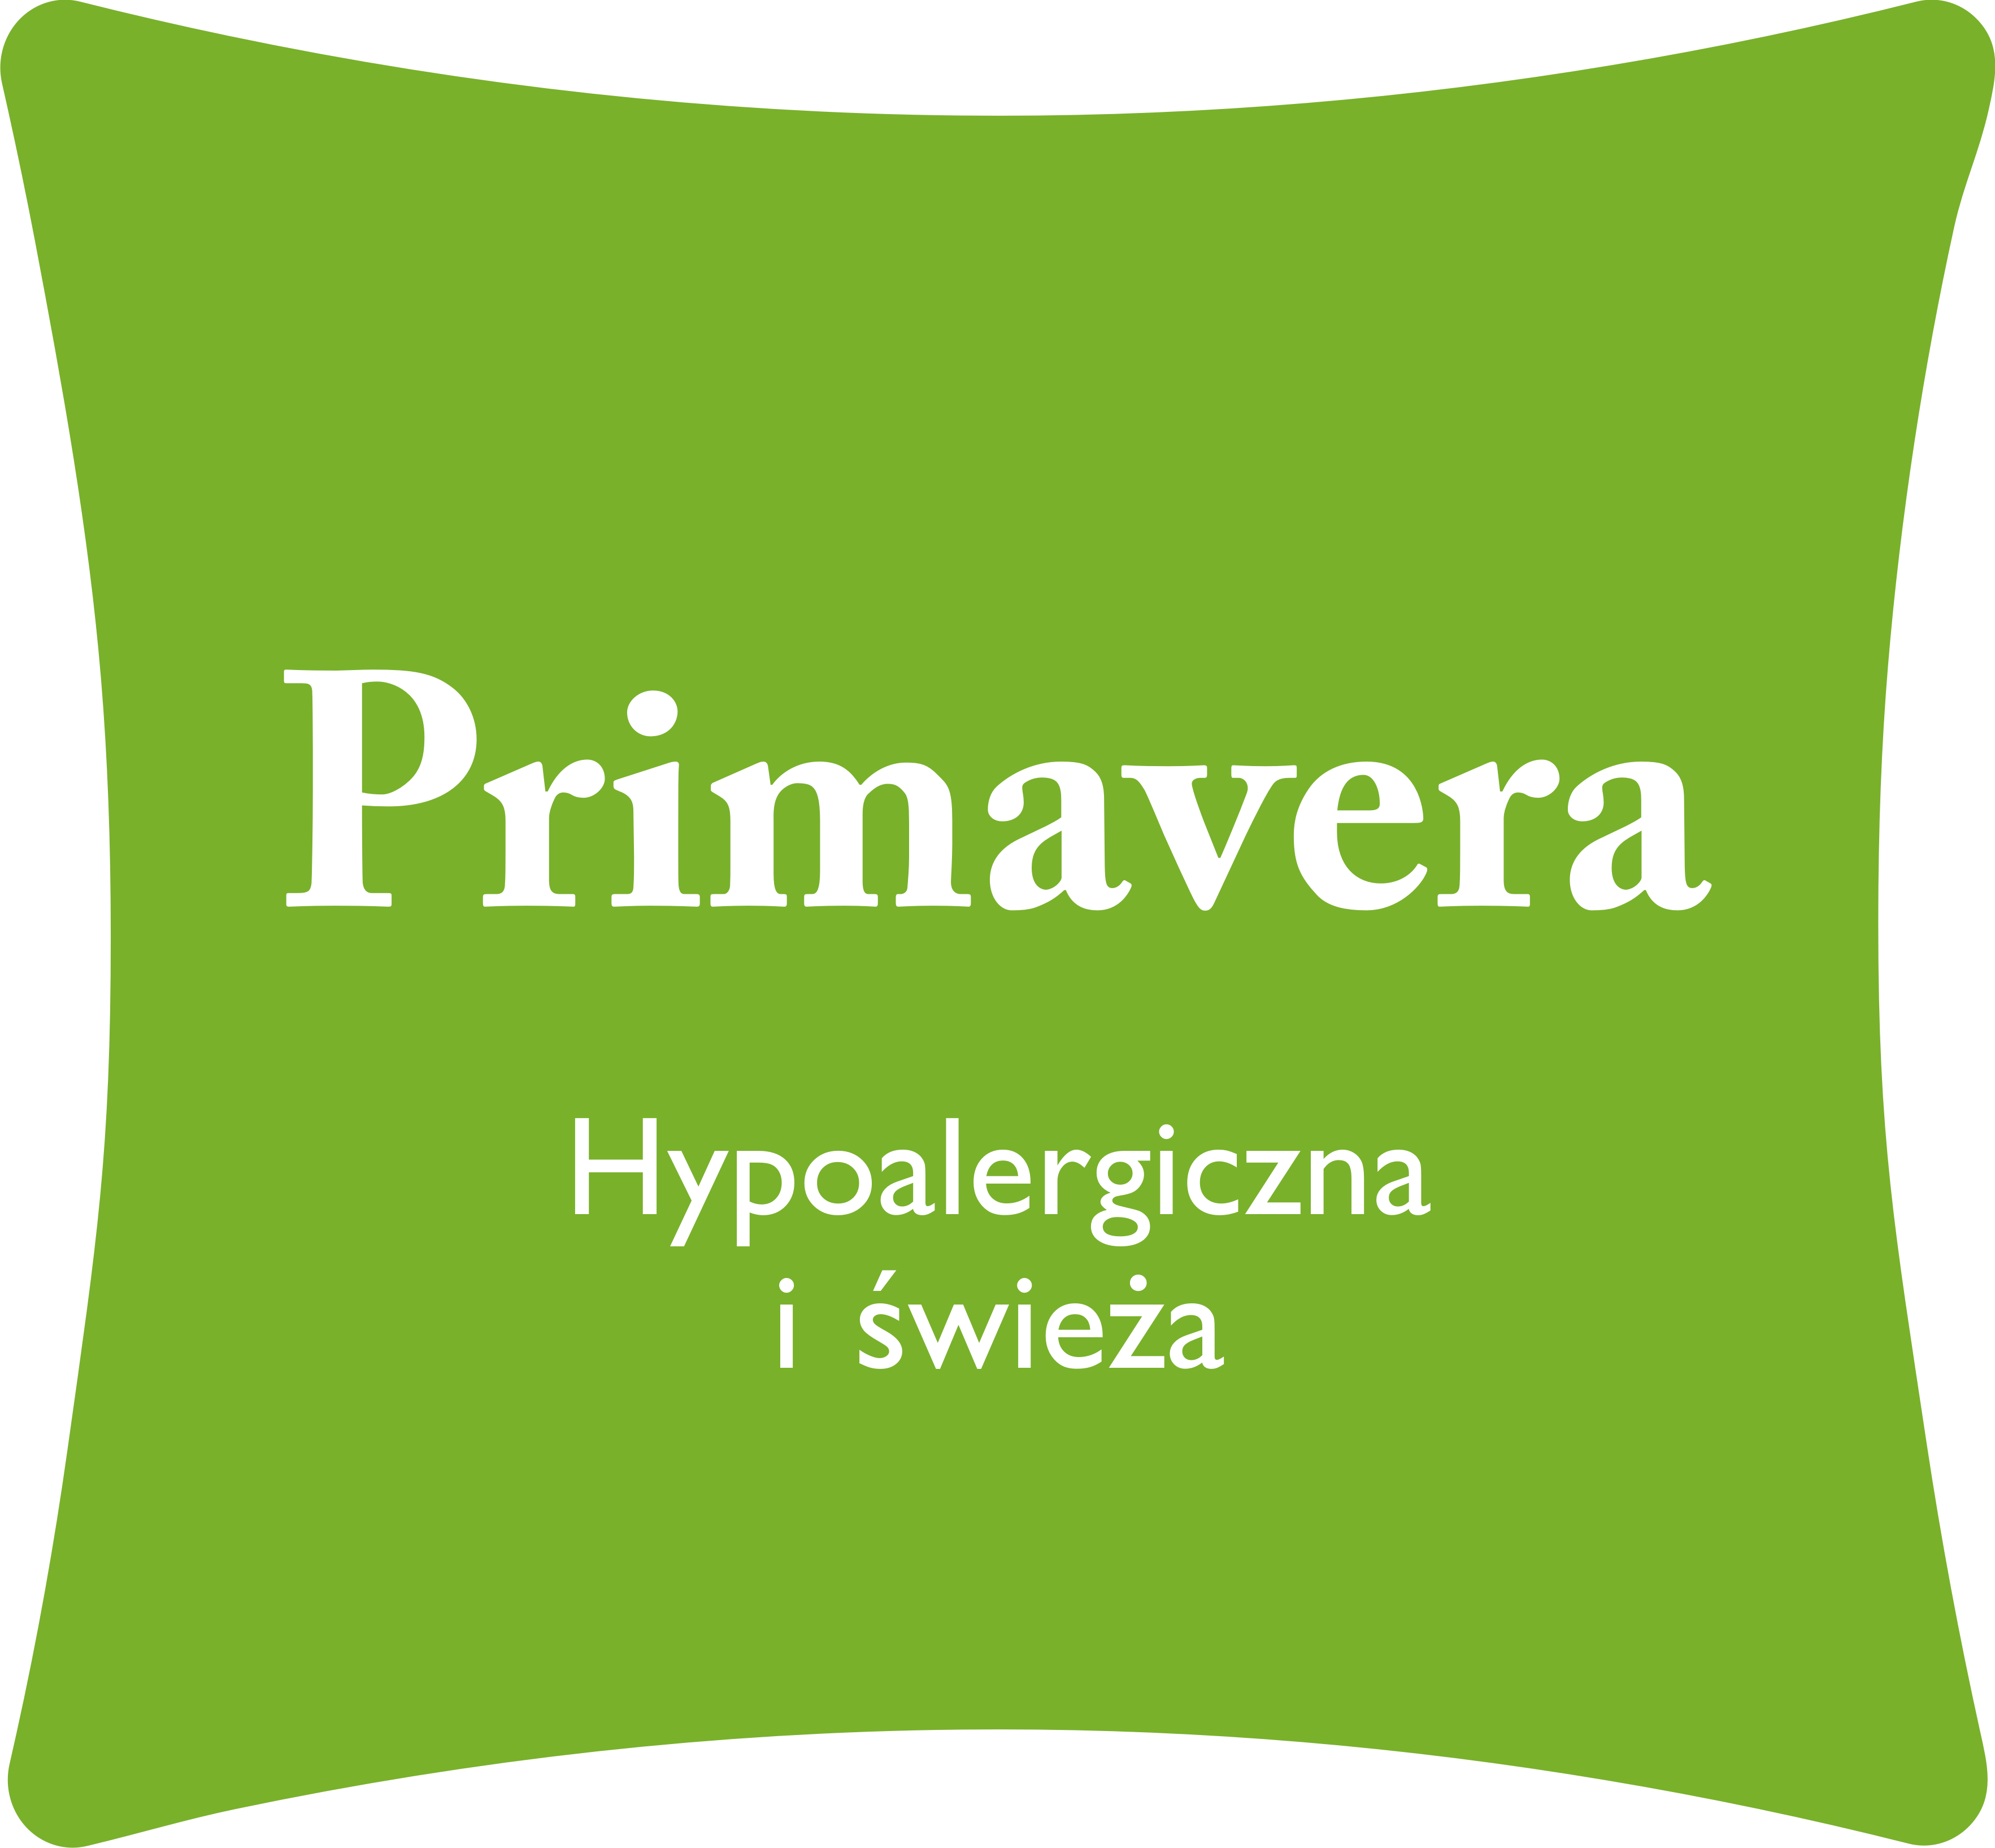 Logo of Primavera duvet and pillows collection